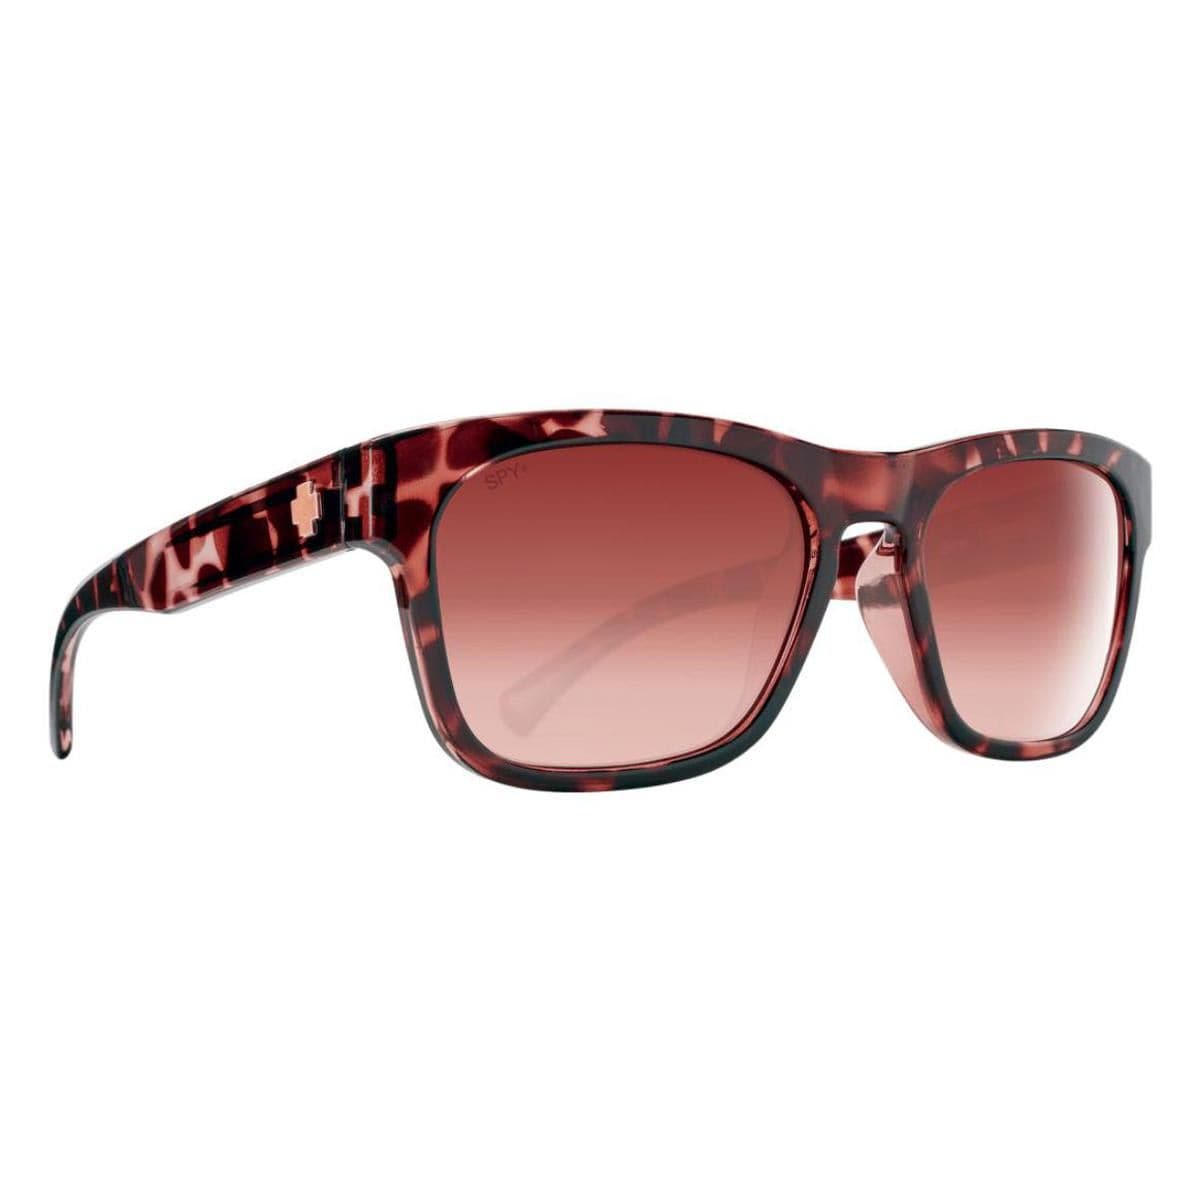 SPY OPTIC CROSSWAY sunglasses